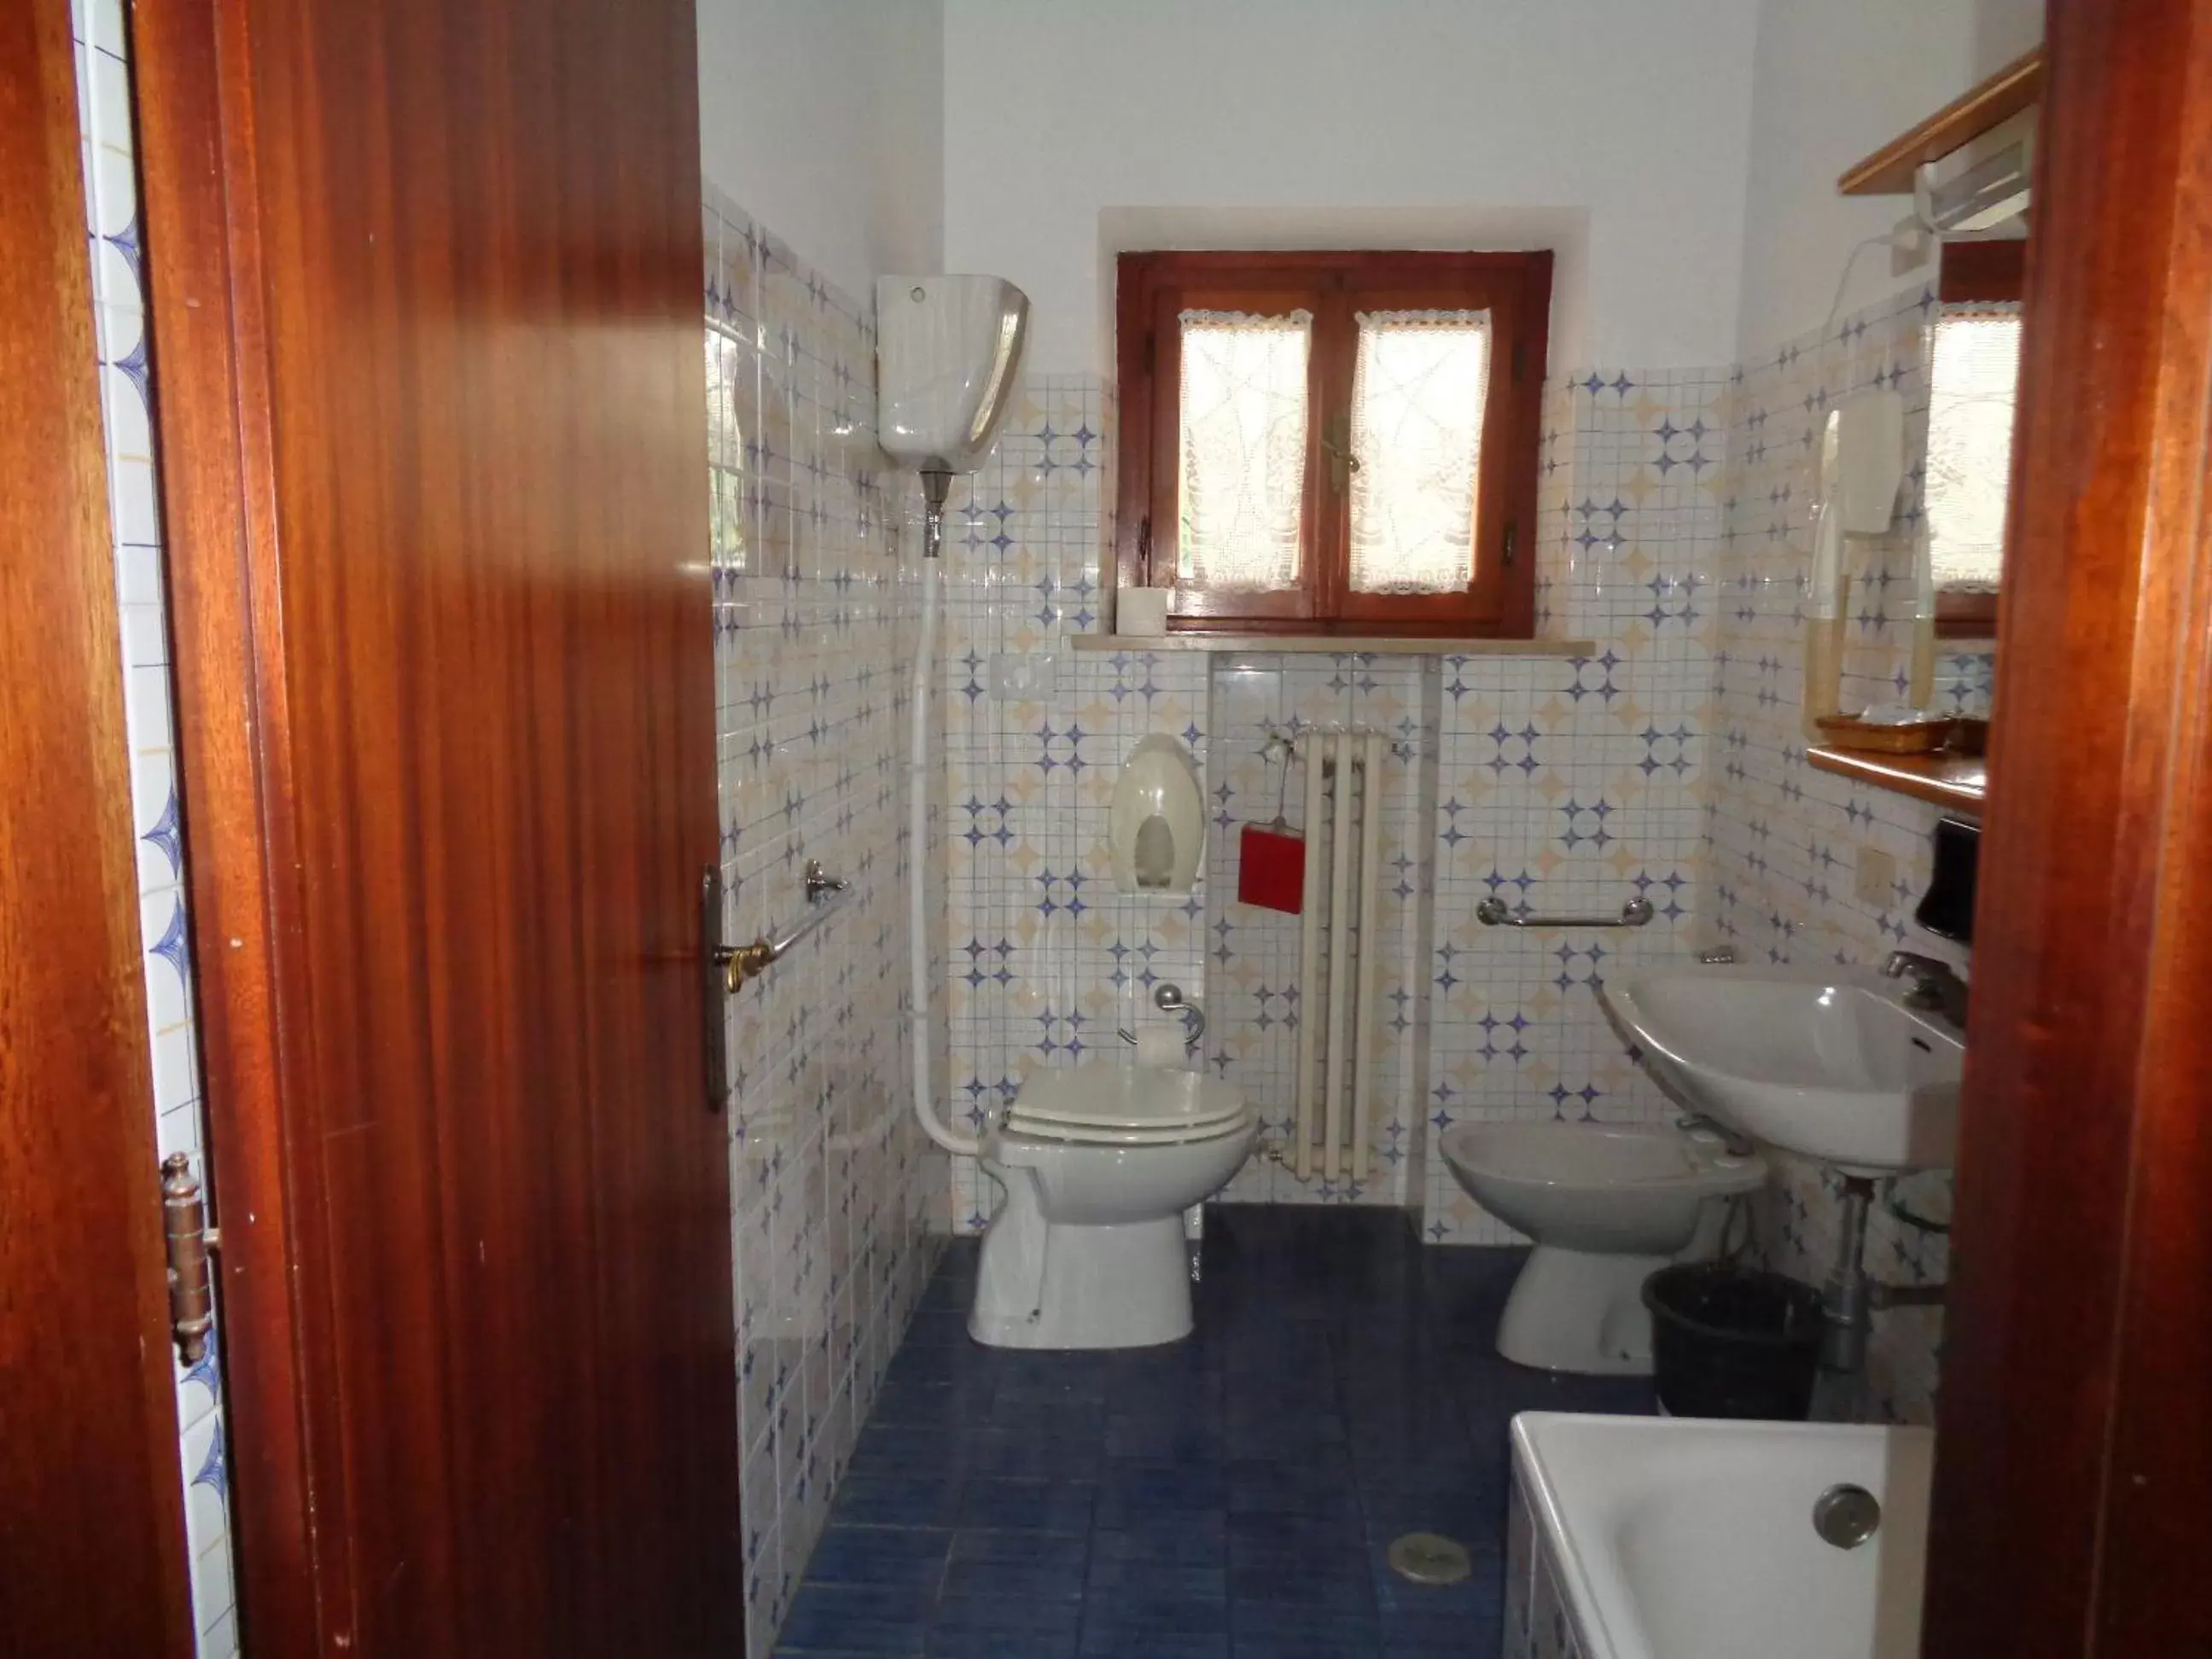 Bathroom in Hotel Rosati